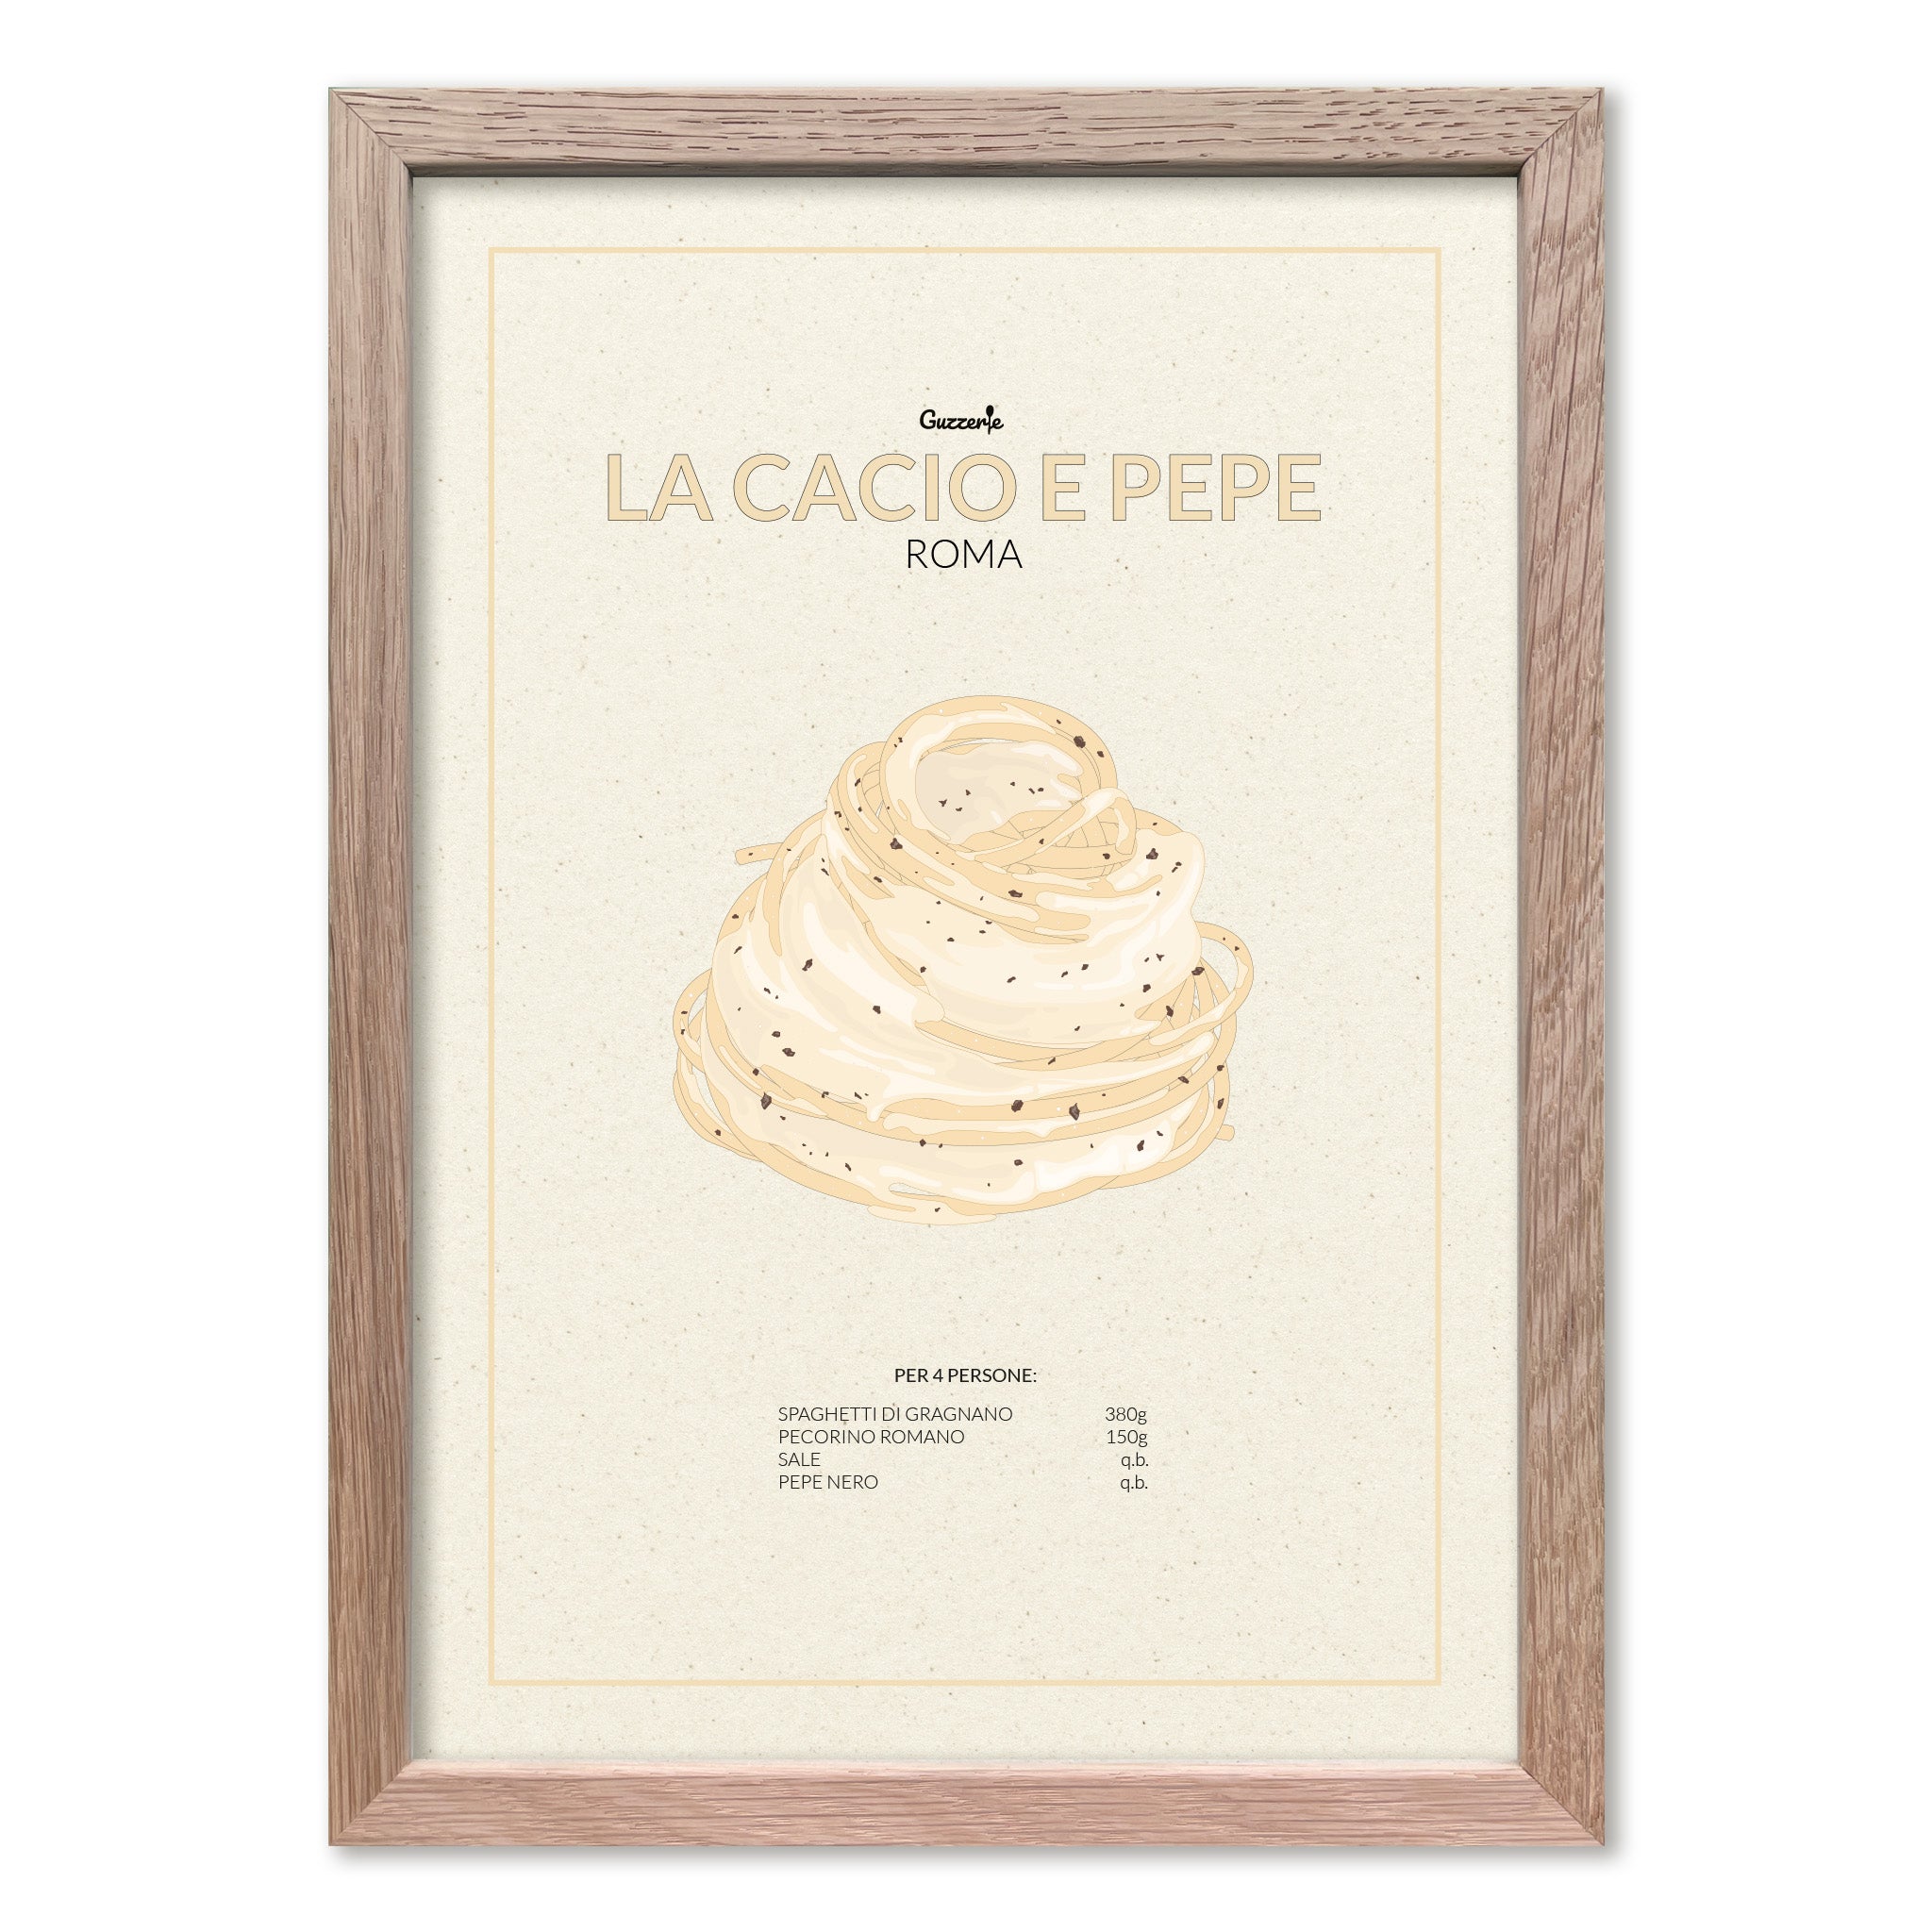 Iconic Poster of Pasta Cacio e Pepe | Guzzerie